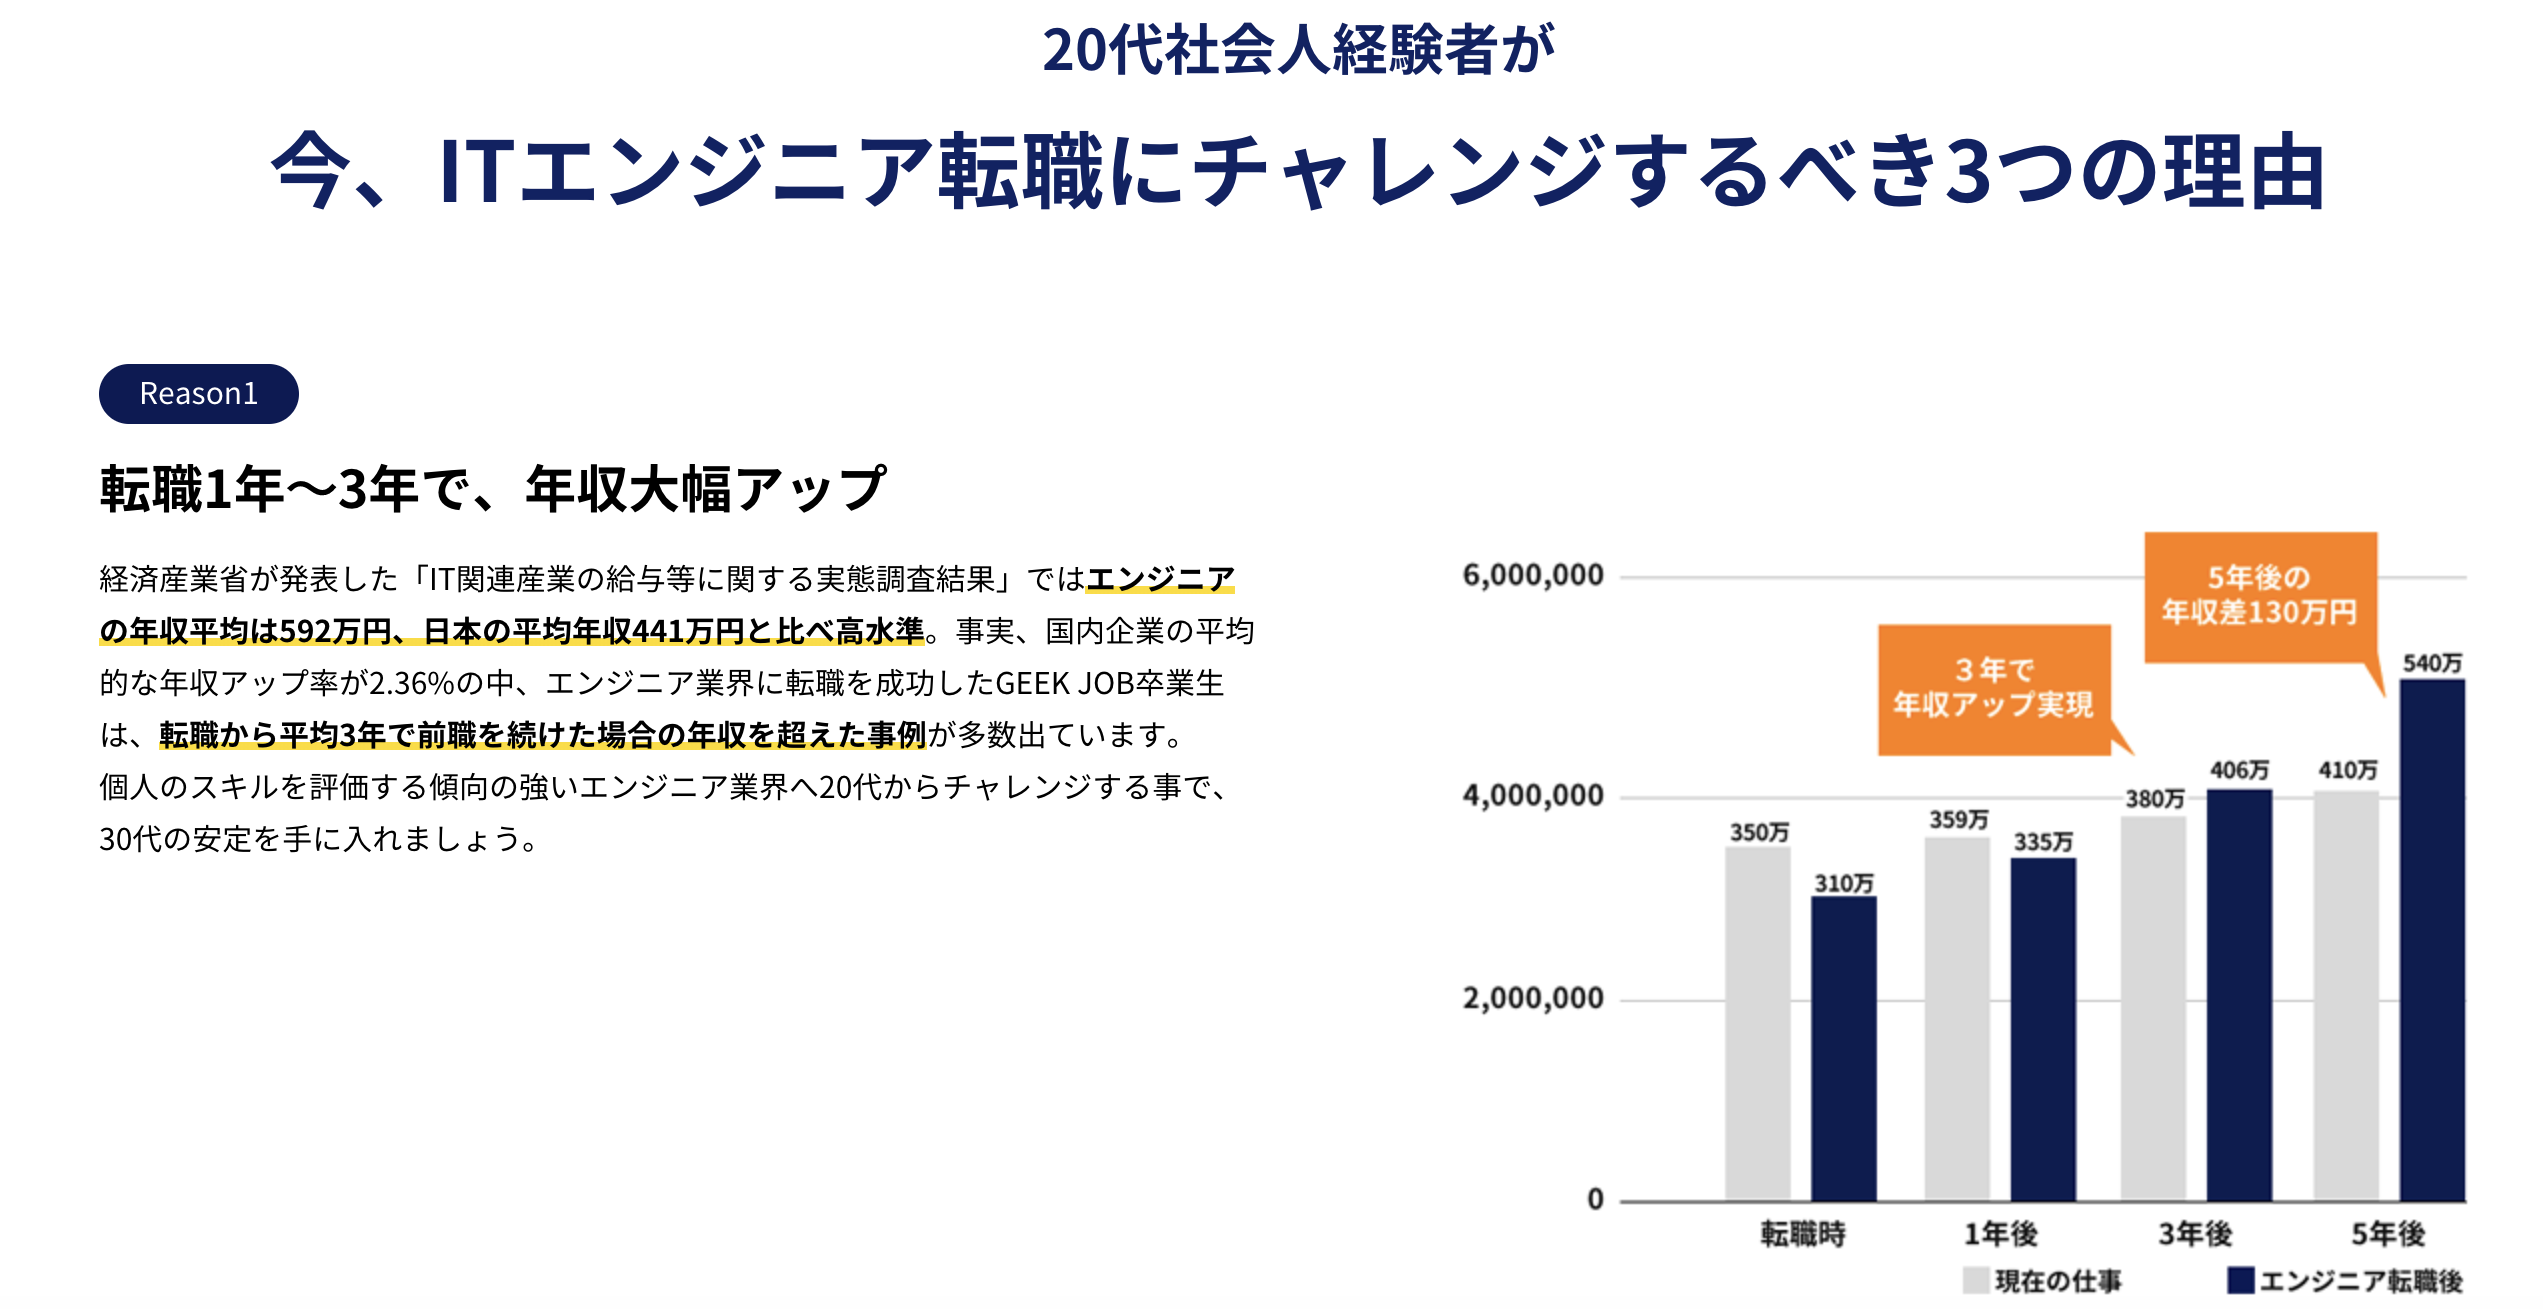 エンジニアの年収平均は592万円。日本の平均年収441万円と比べ高水準。転職時は年収が下がるパターンもあり。